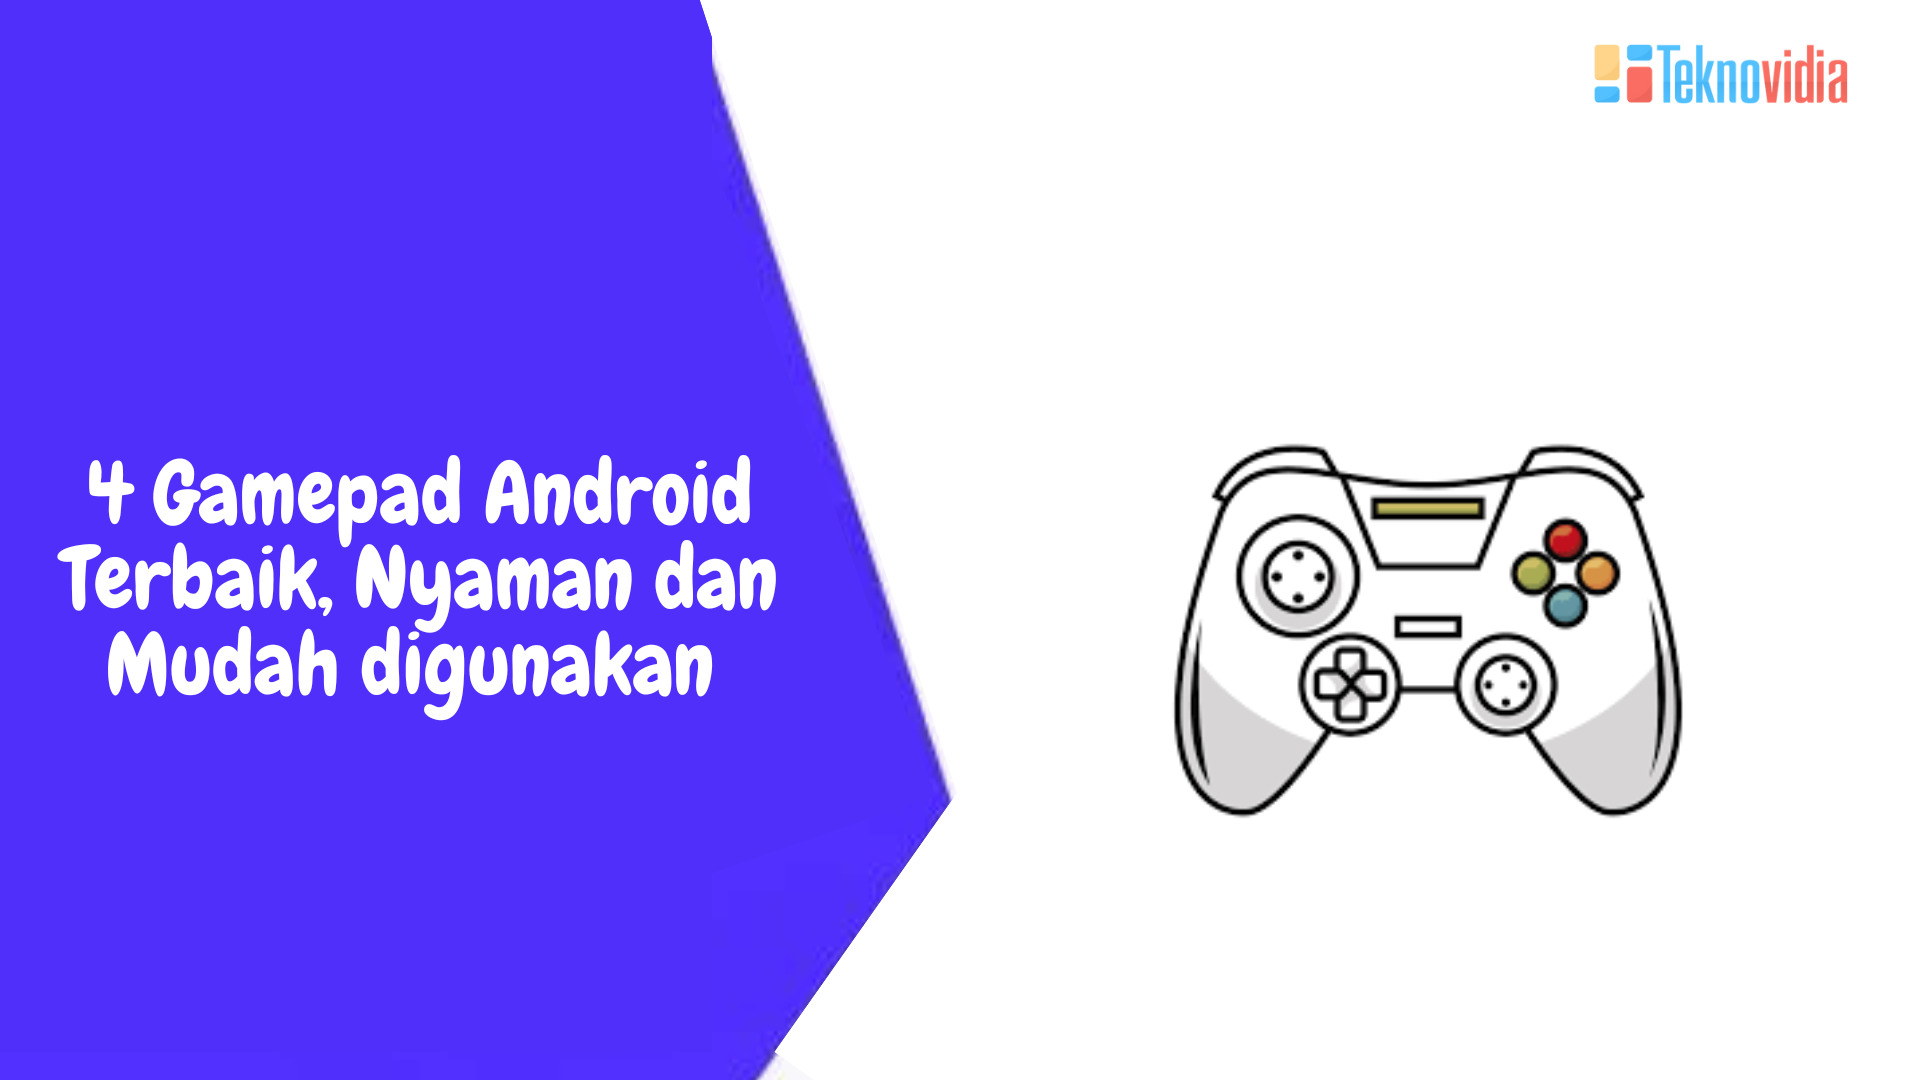 4 Gamepad Android Terbaik, Nyaman dan Mudah digunakan